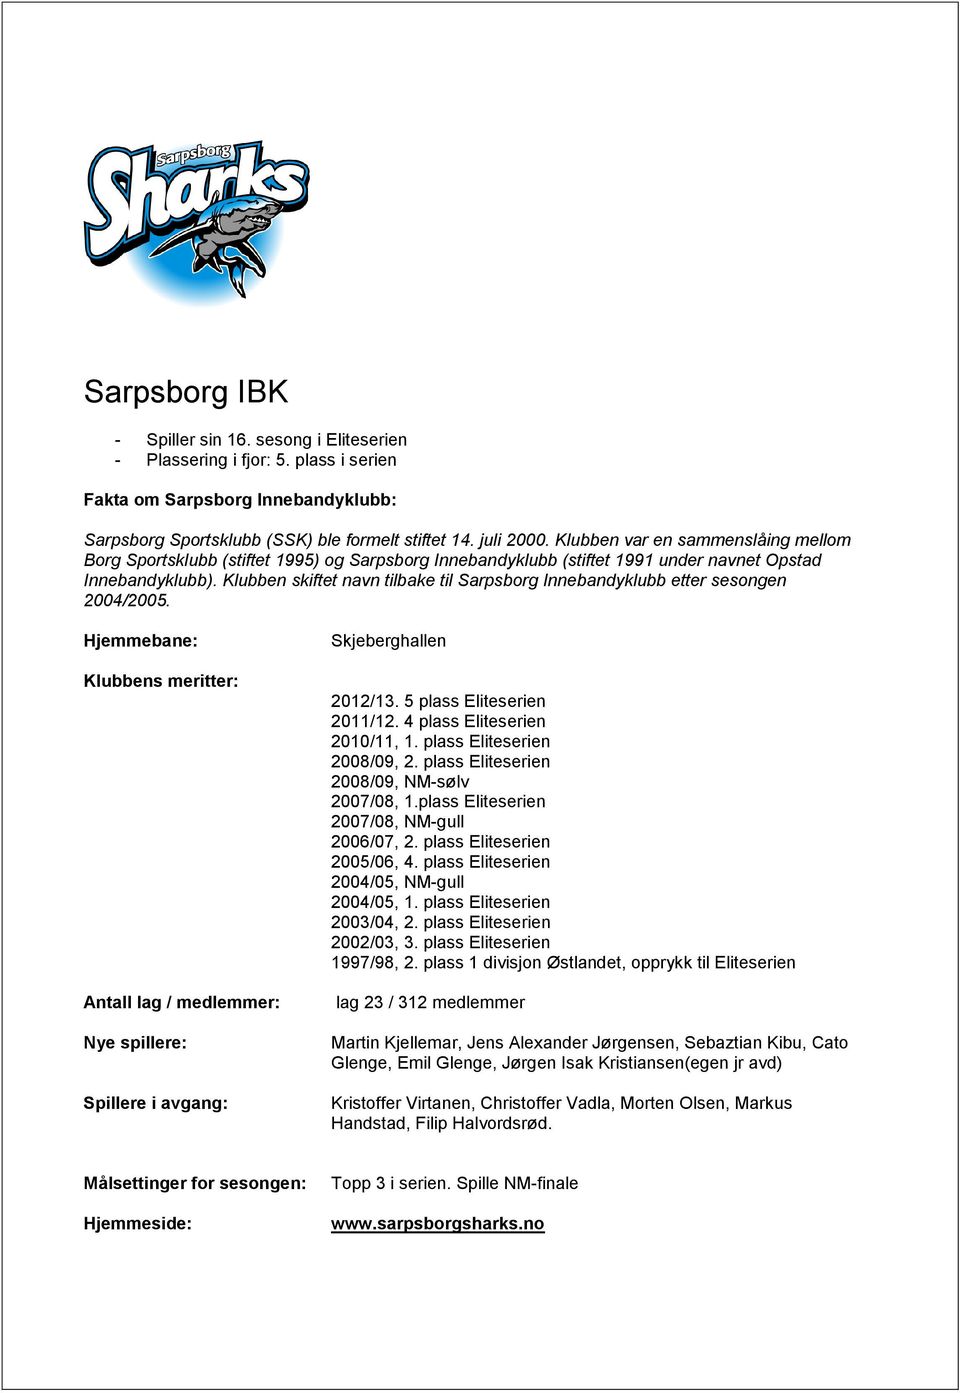 Klubben skiftet navn tilbake til Sarpsborg Innebandyklubb etter sesongen 2004/2005. Antall lag / medlemmer: Skjeberghallen 2012/13. 5 plass Eliteserien 2011/12. 4 plass Eliteserien 2010/11, 1.